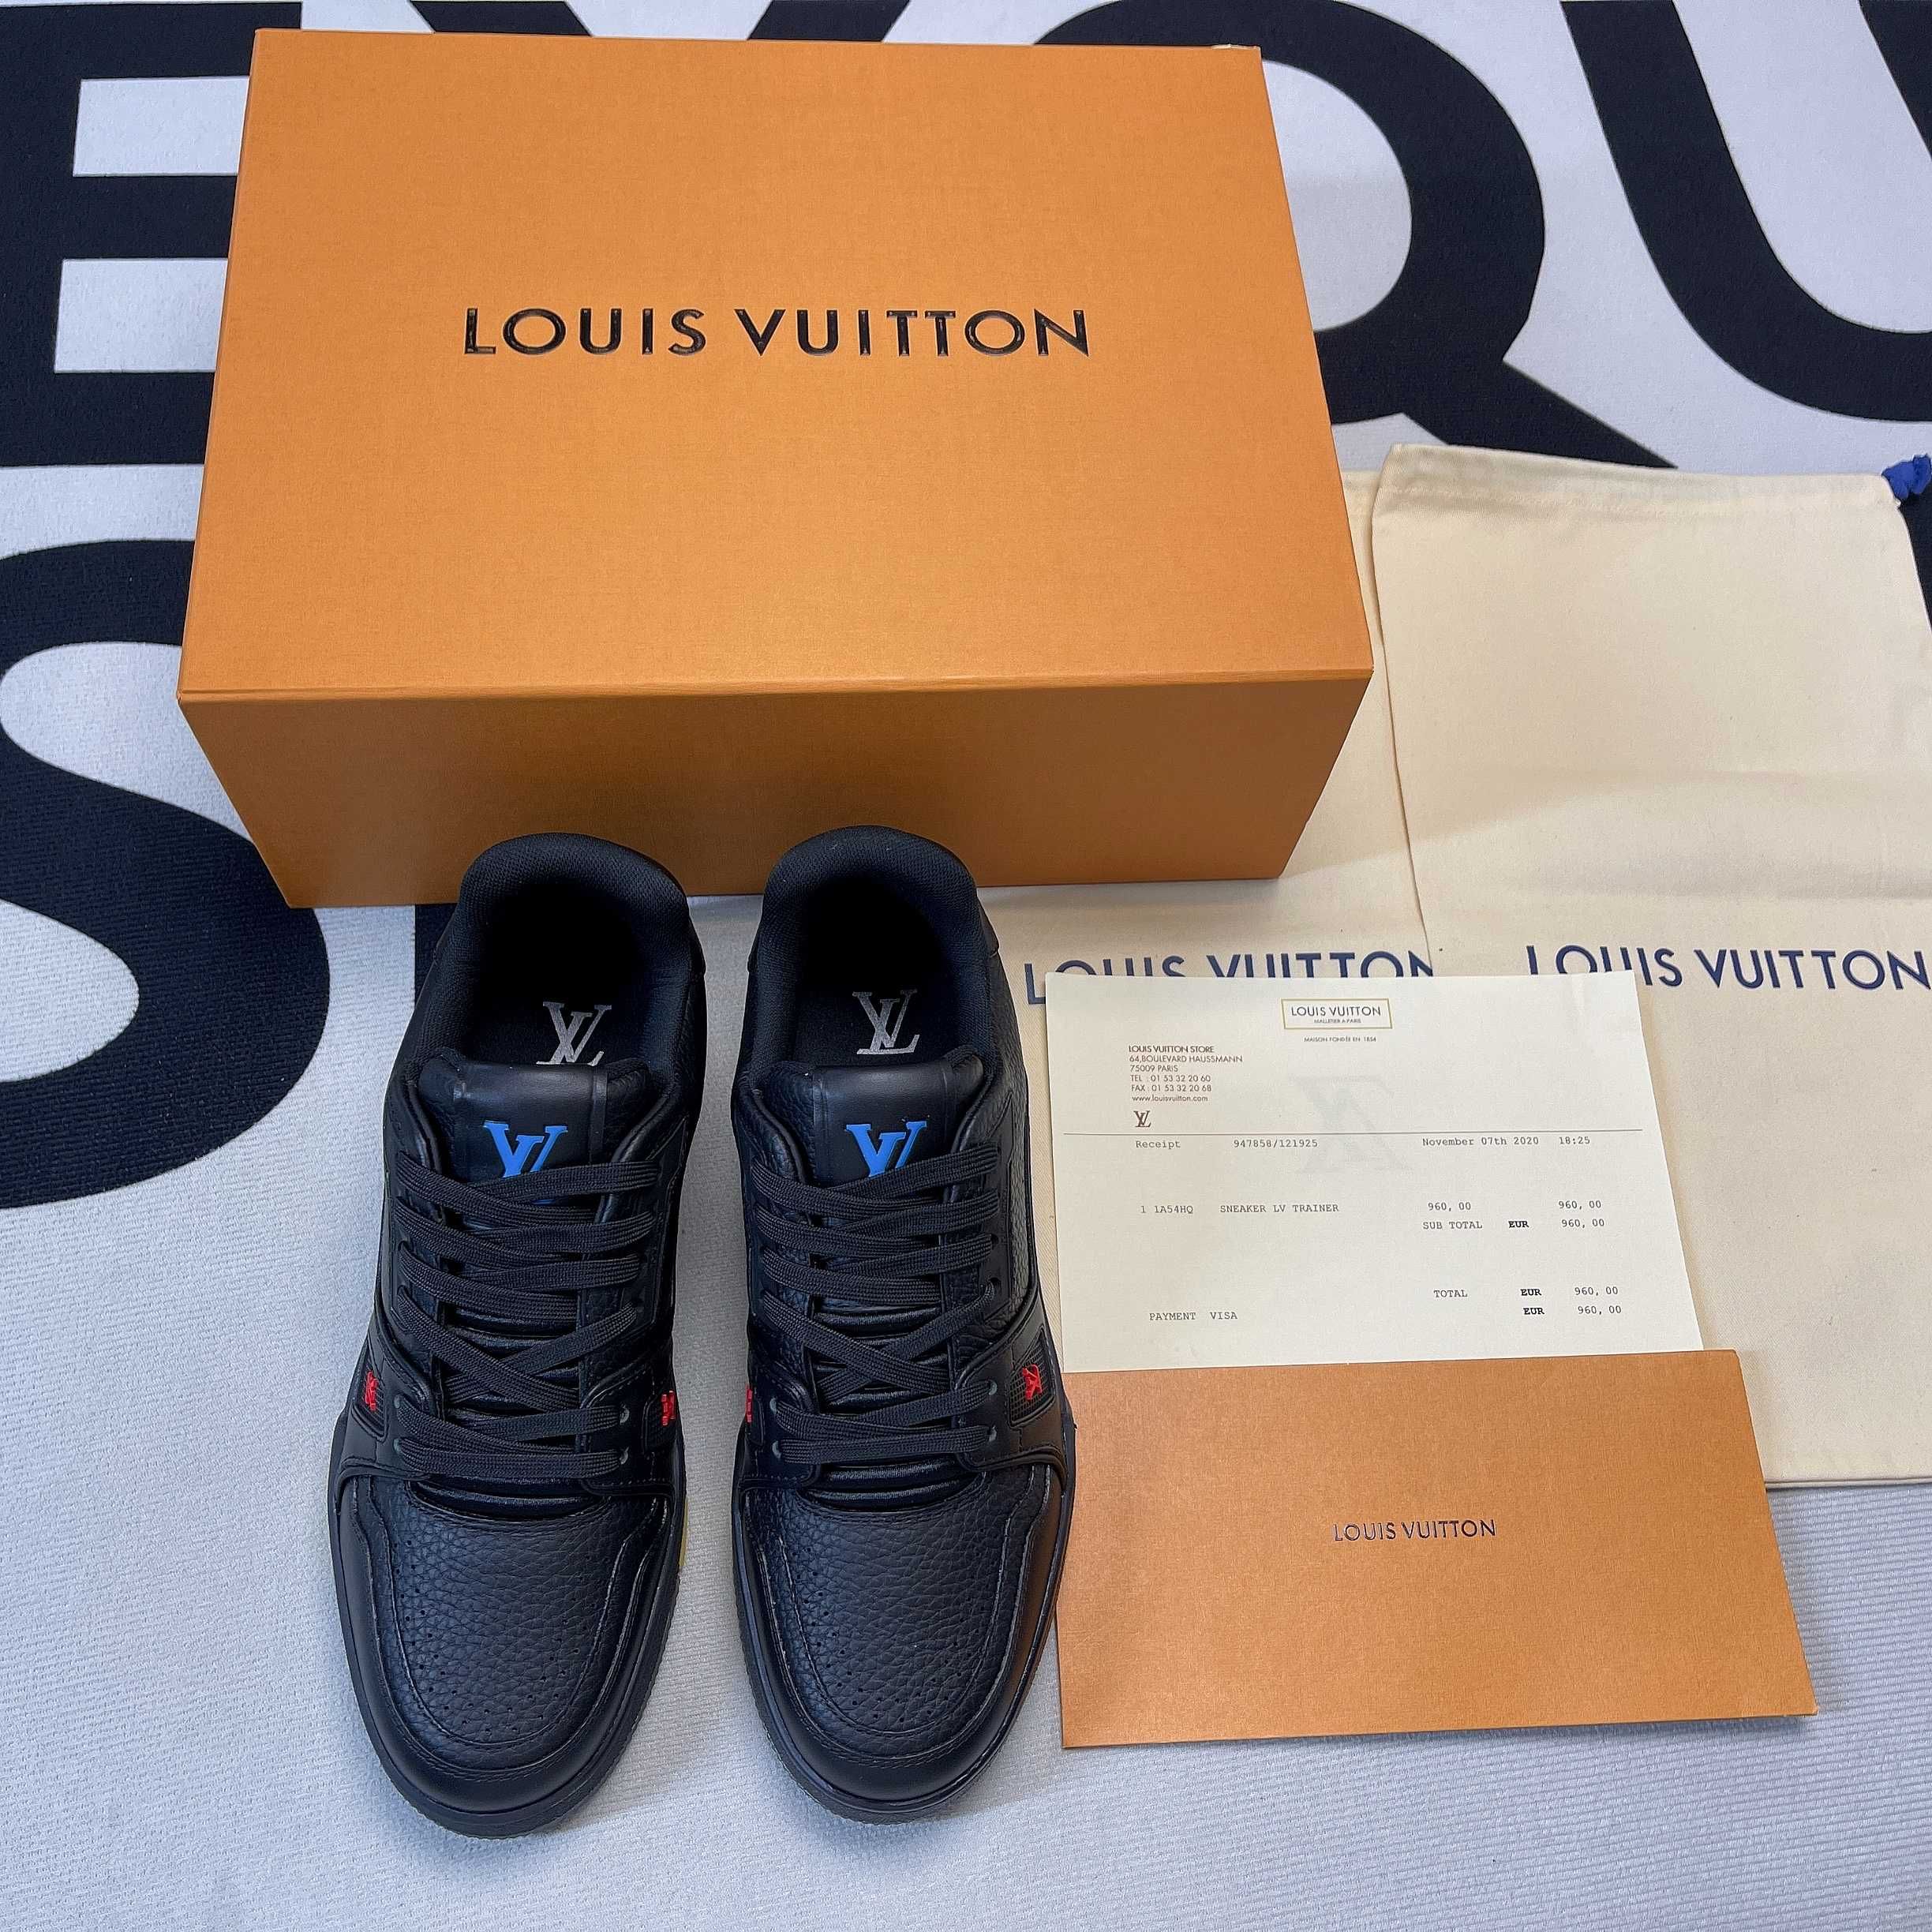 Buty Louis Vuitton LV Trainer Black Signature (Rozm.38-46)